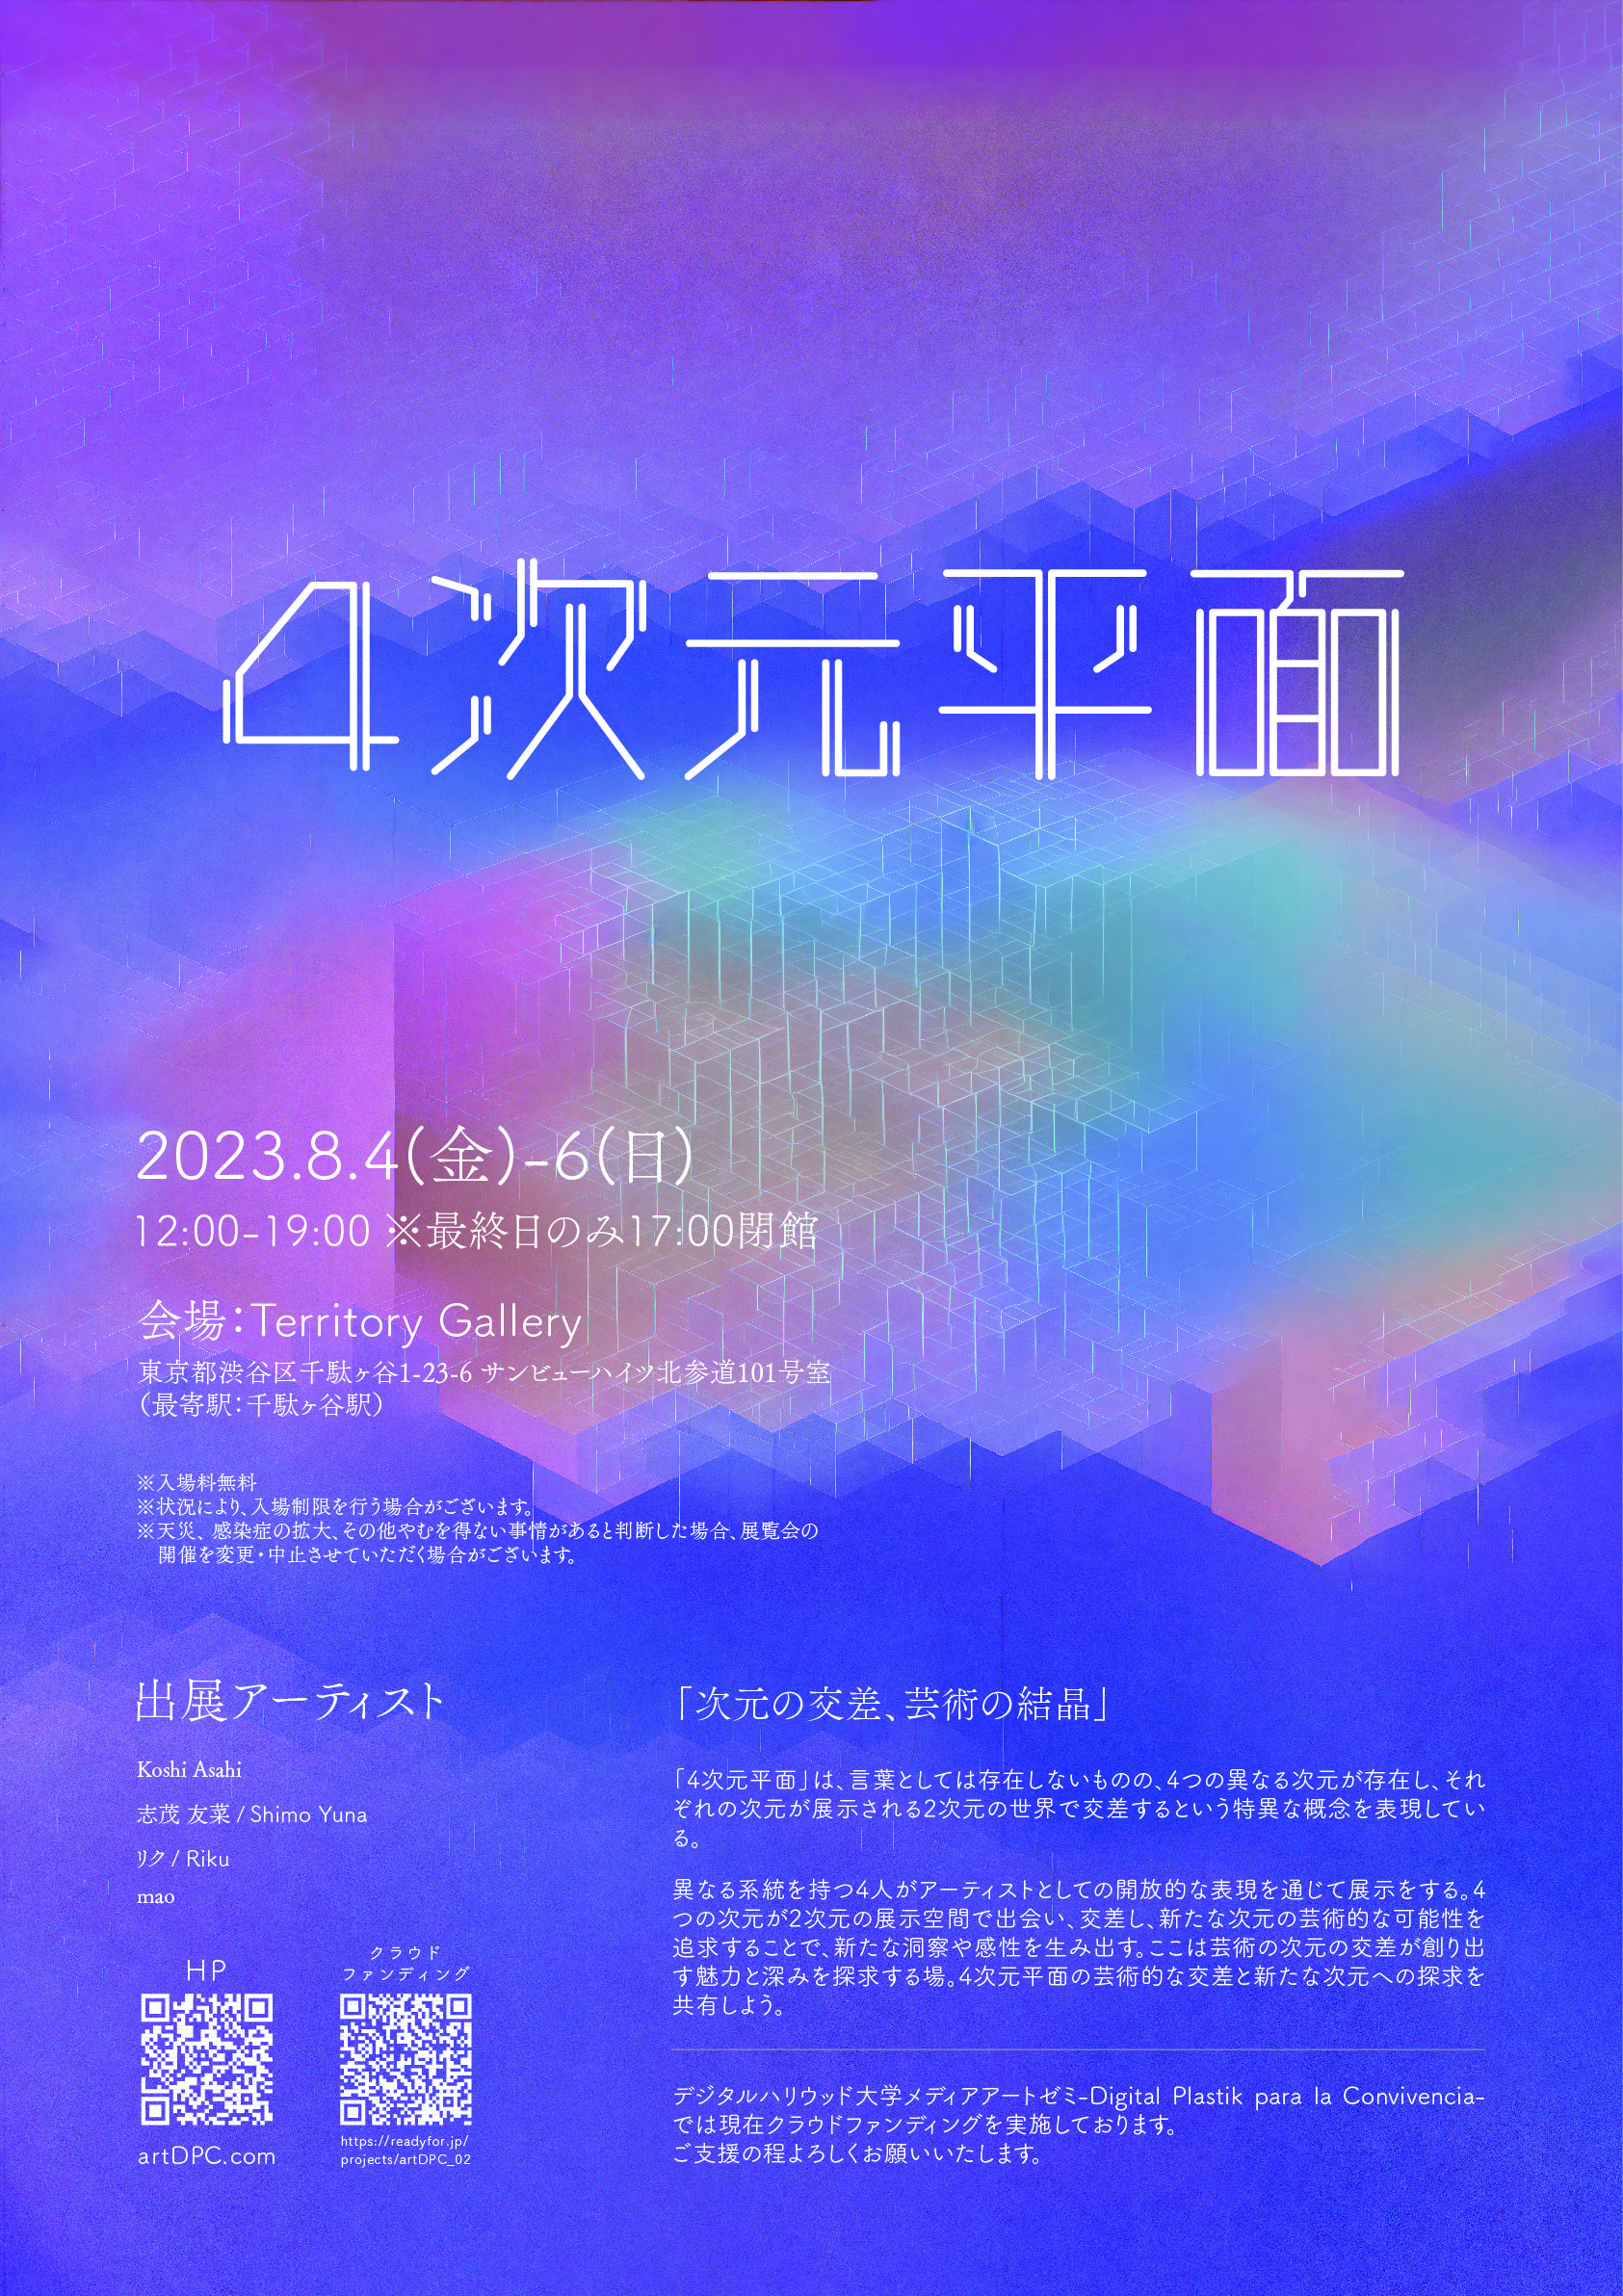 Koshi Asahi・志茂 友菜・リク・mao「4次元平面」展